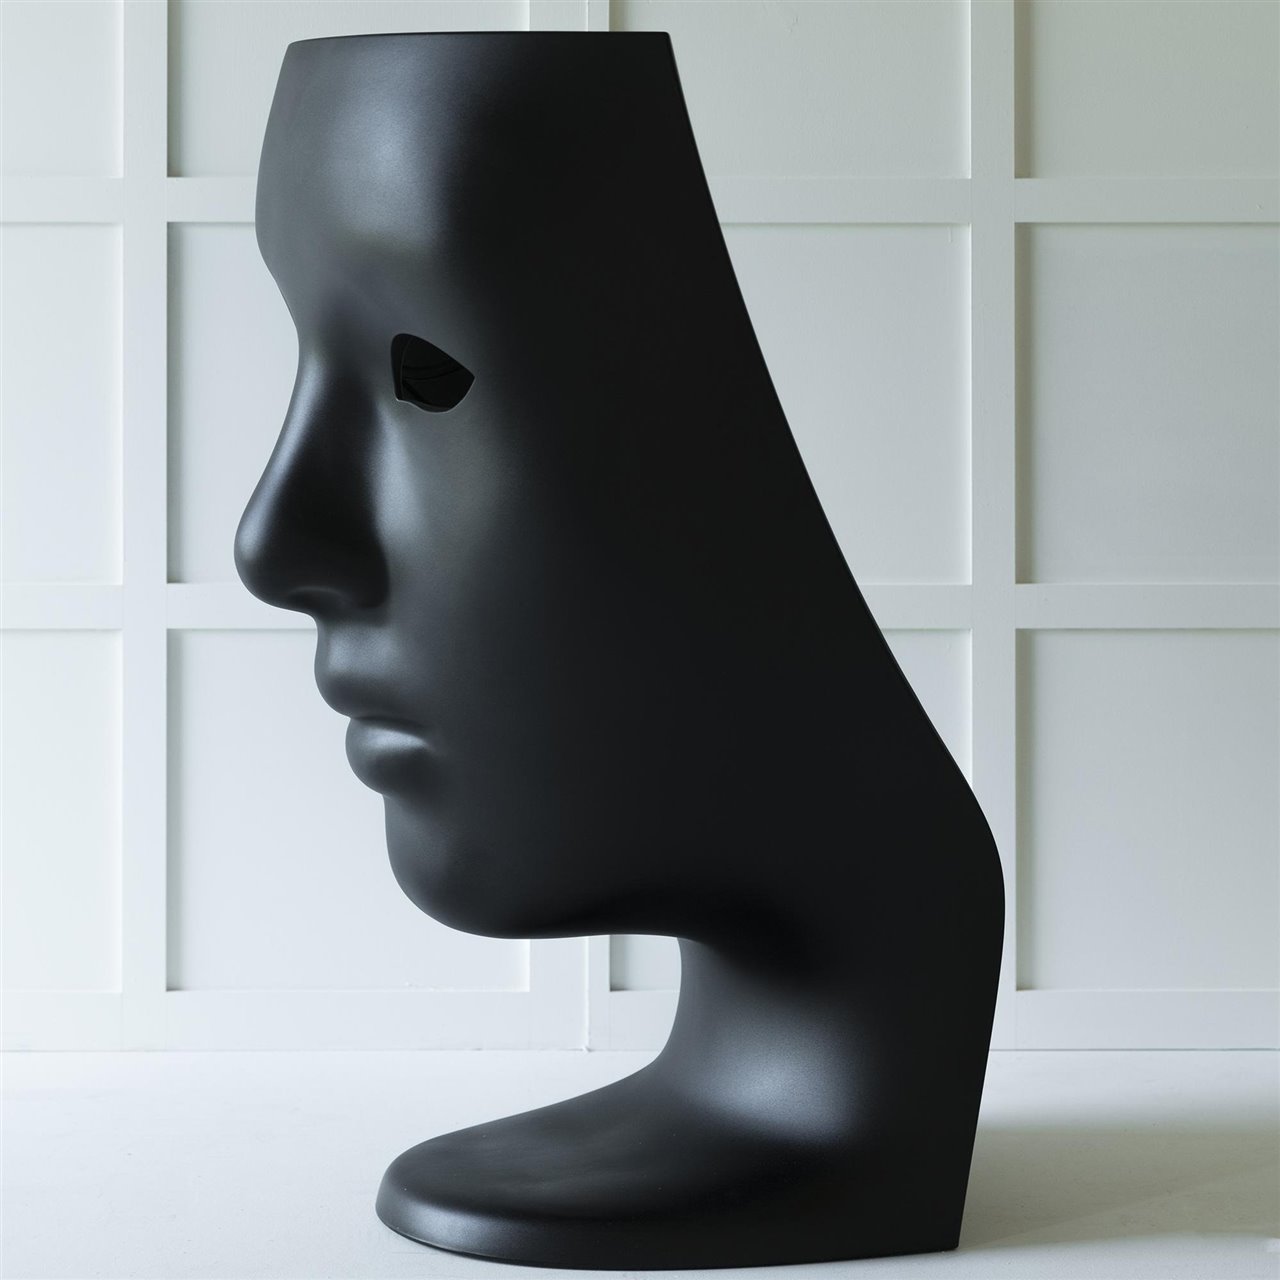 El vanguardista diseñador Fabio Novembre desarrolló esta silla con forma de máscara/cara hecha en polietileno.